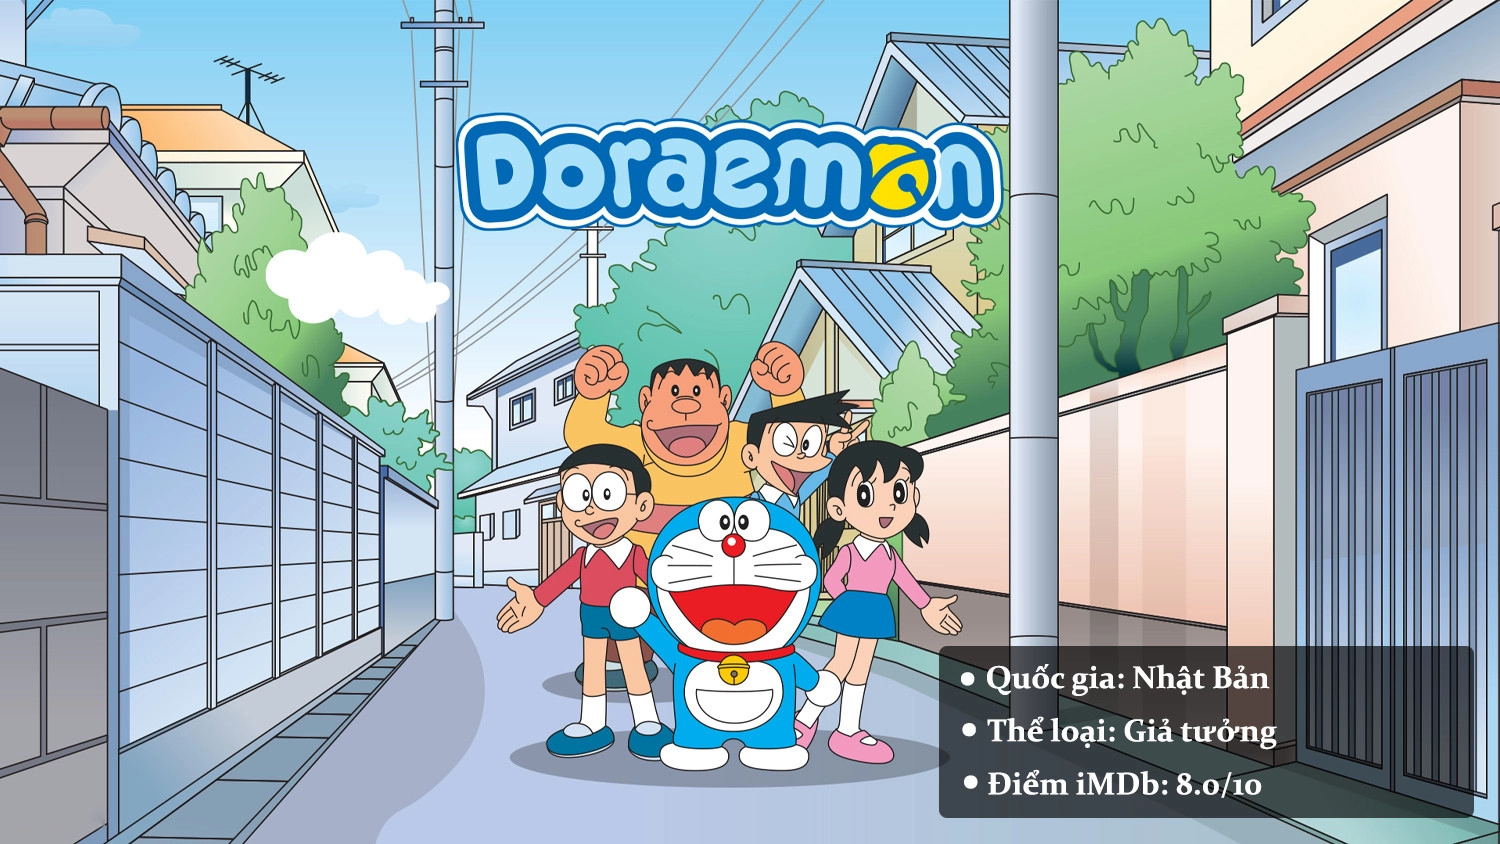 Doraemon – Chú Mèo Máy Đến Từ Tương Lai